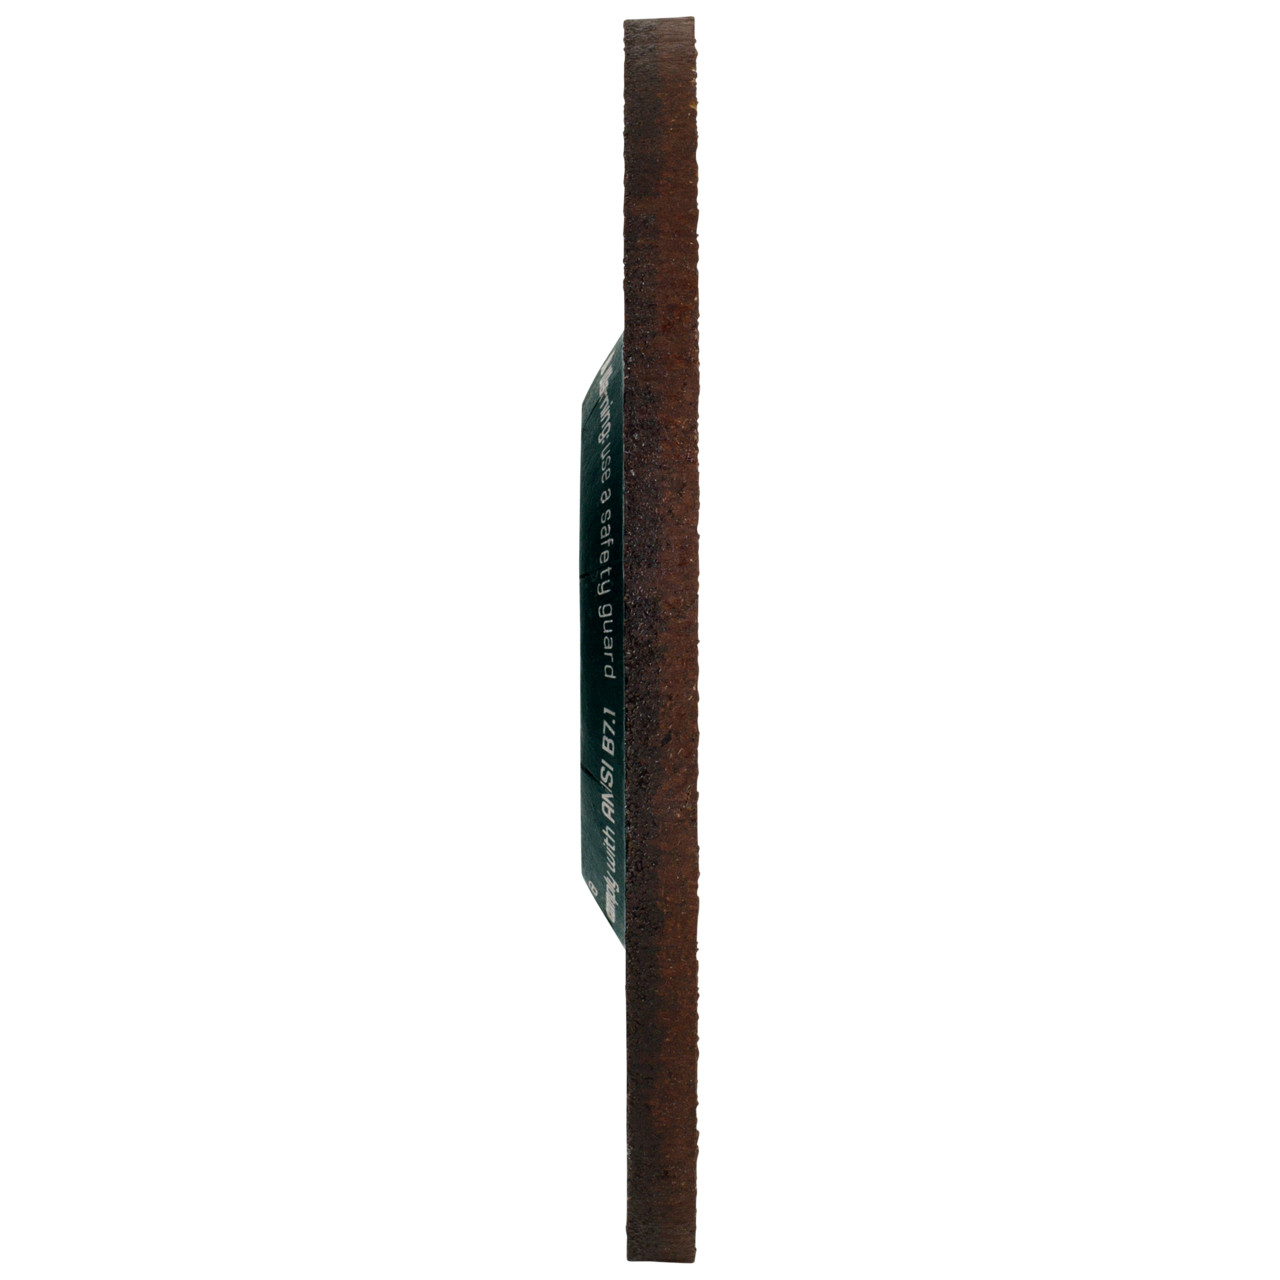 Tyrolit Opbraamschijf DxUxH 115x4x22,23 CERABOND X voor staal en roestvrij staal Art.34401827